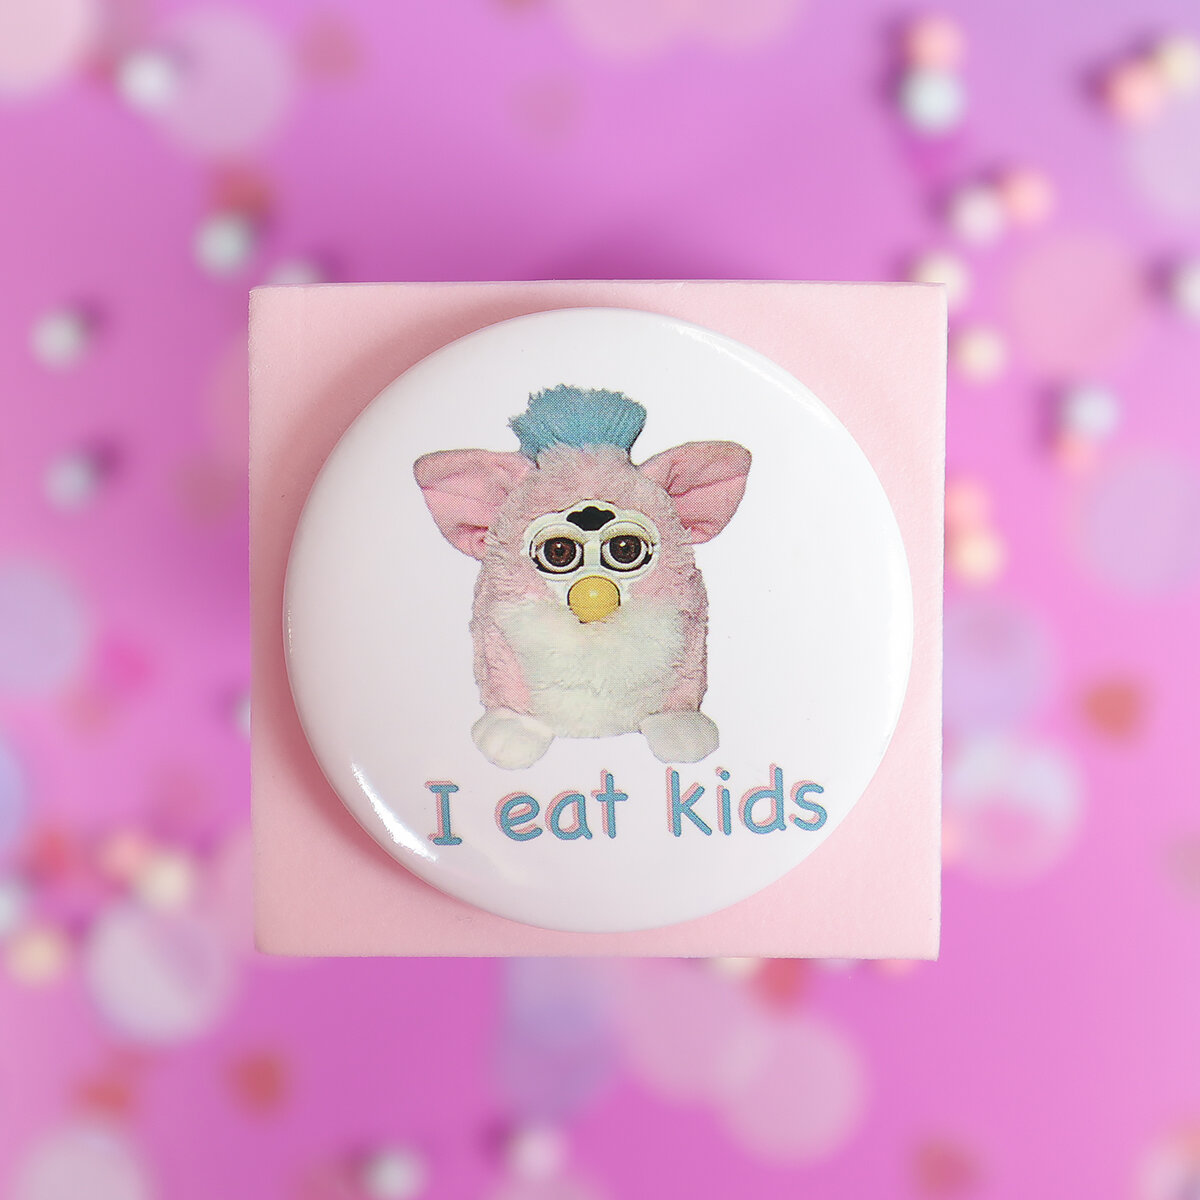 Stor knapp - Furby, I eat kids